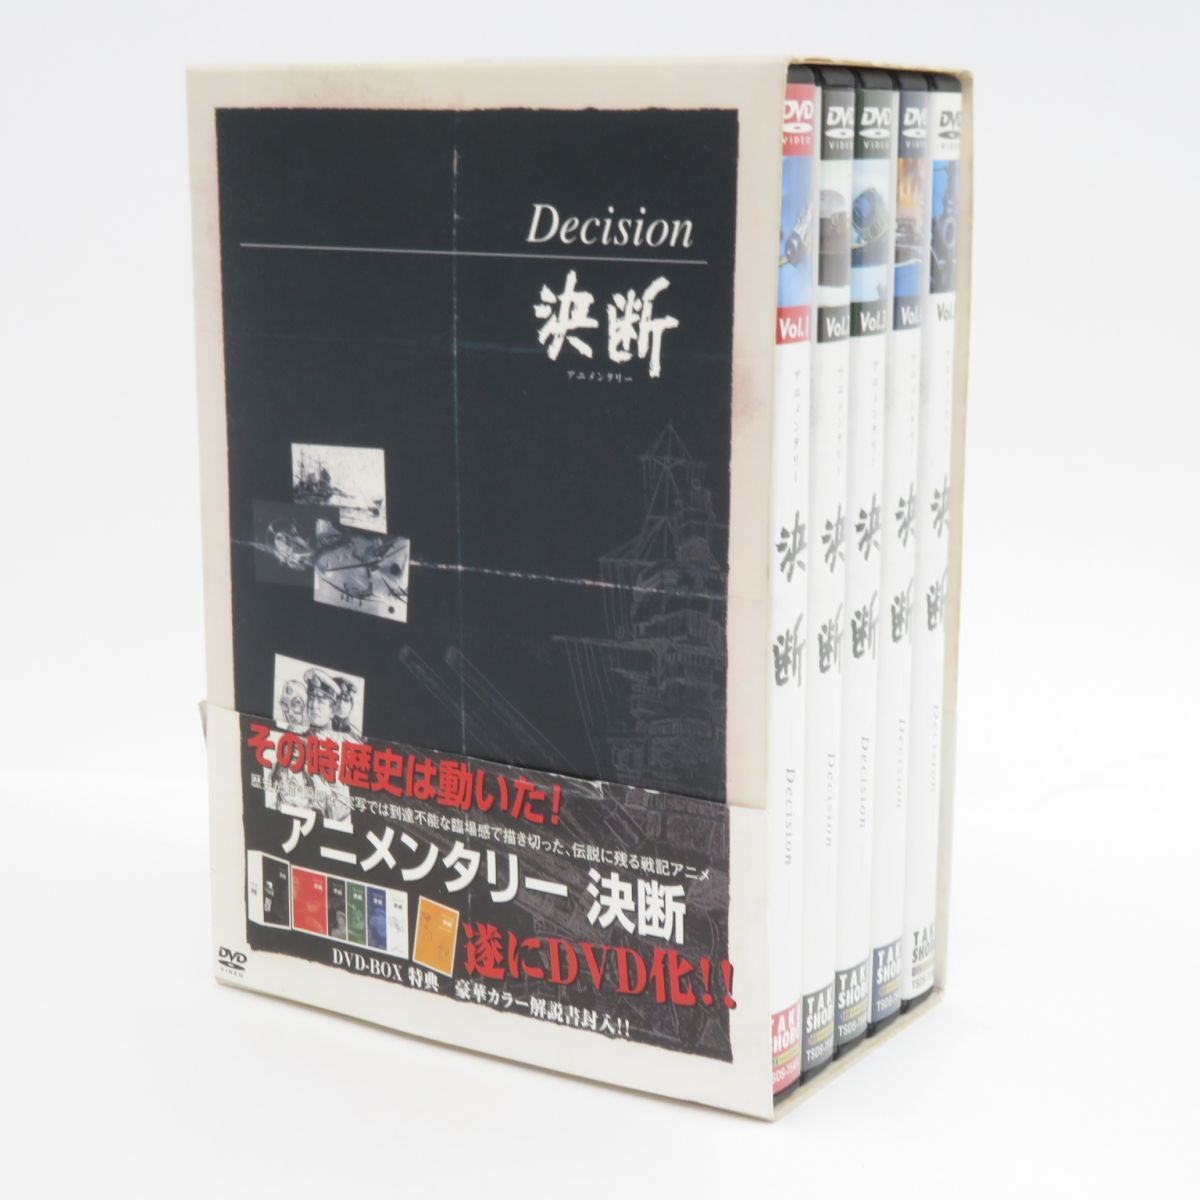 DVD アニメンタリー 決断 DVD-BOX ※中古